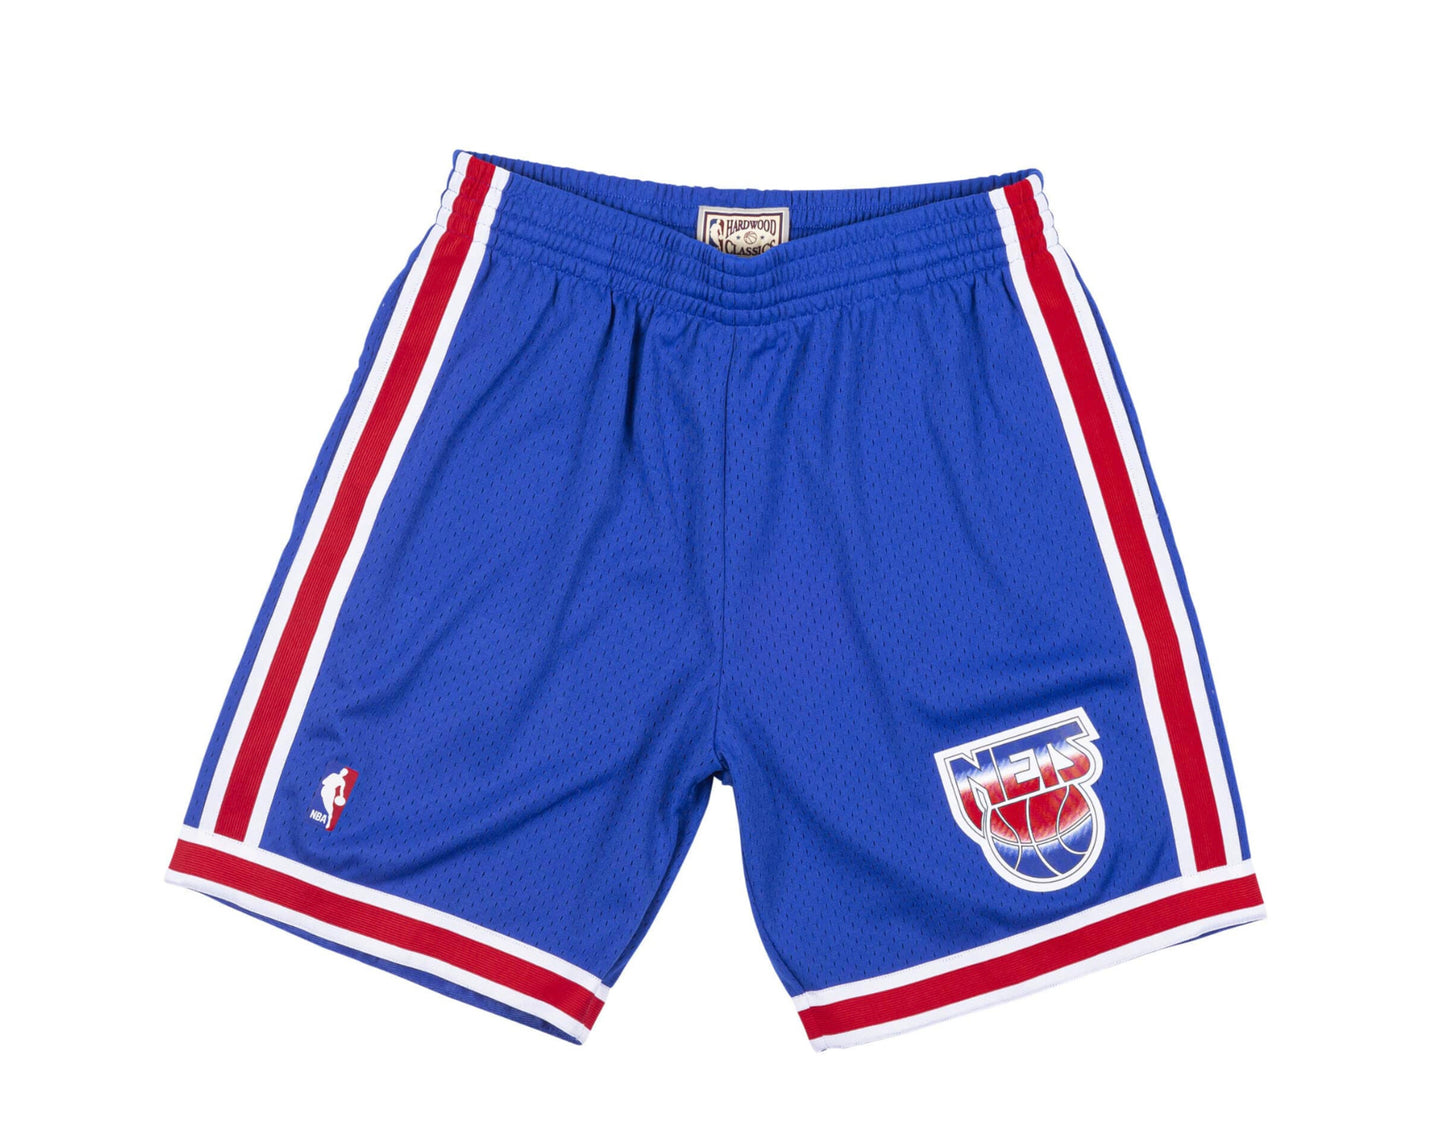 Mitchell & Ness Swingman New Jersey Nets Road 1993-94 Shorts